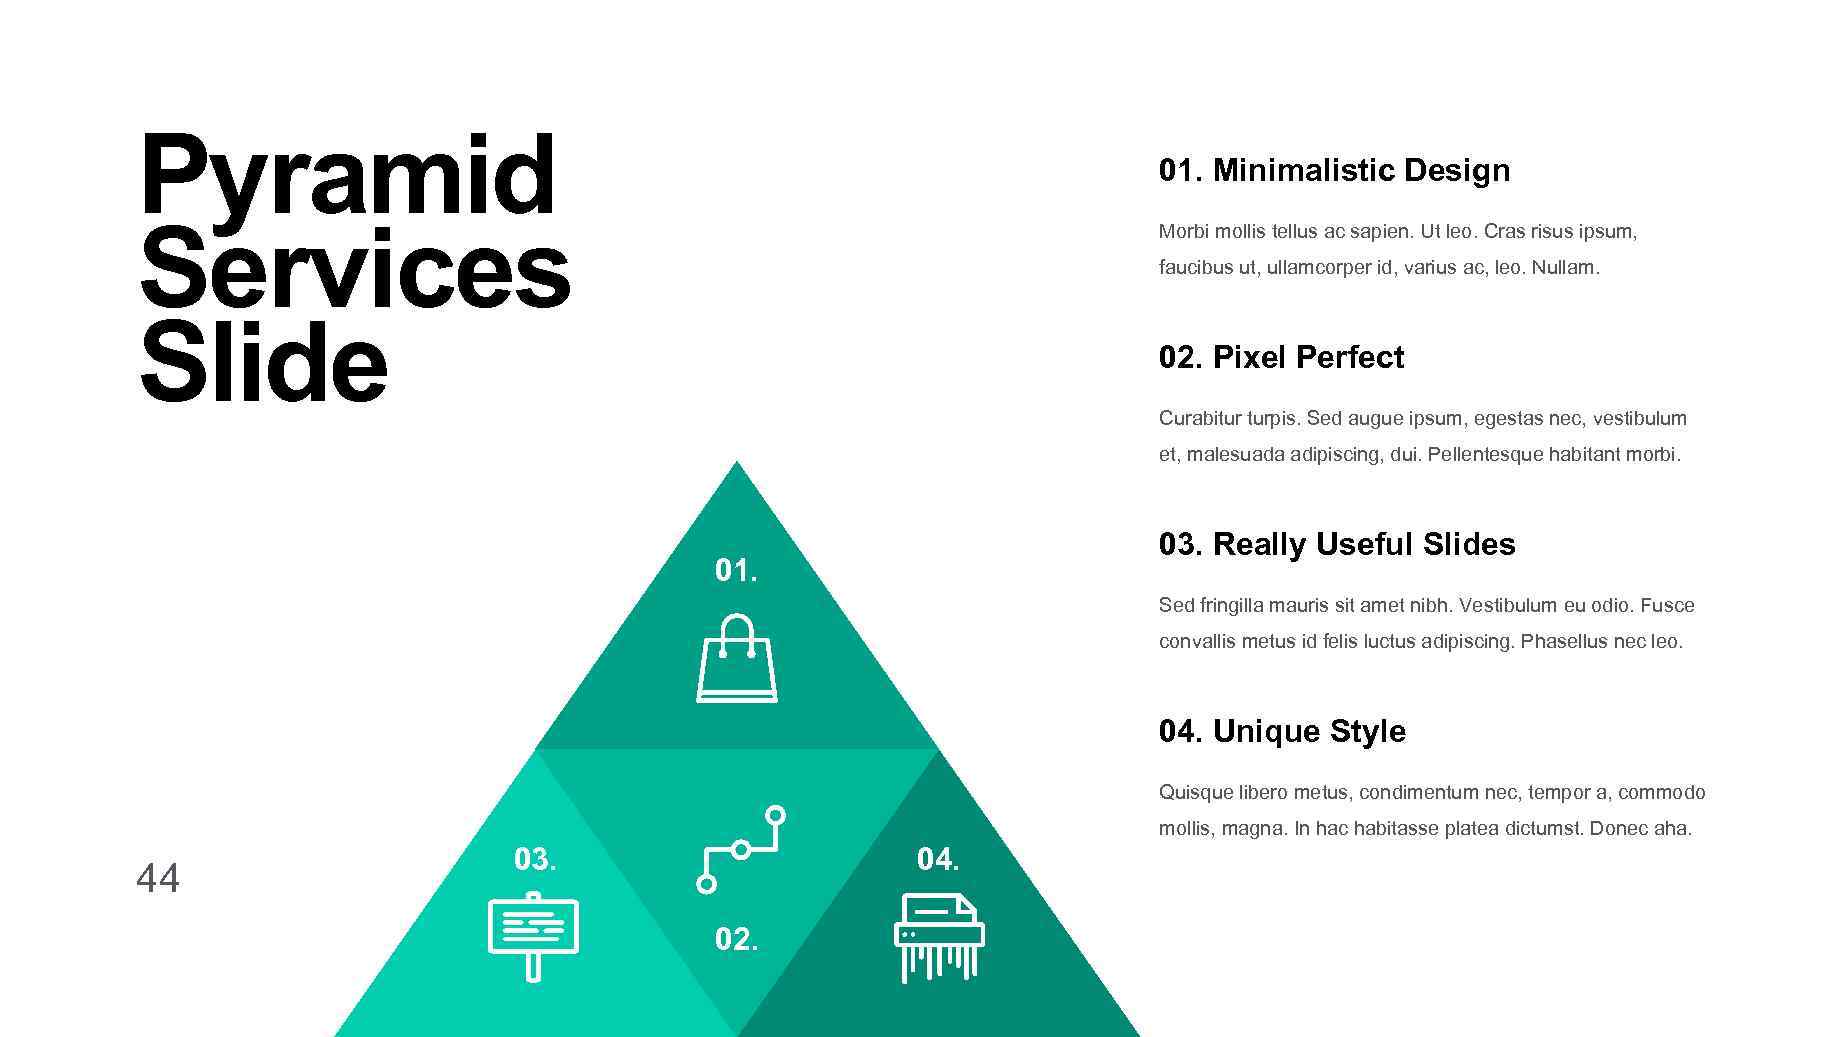 Pyramid Services Slide 01. Minimalistic Design Morbi mollis tellus ac sapien. Ut leo. Cras